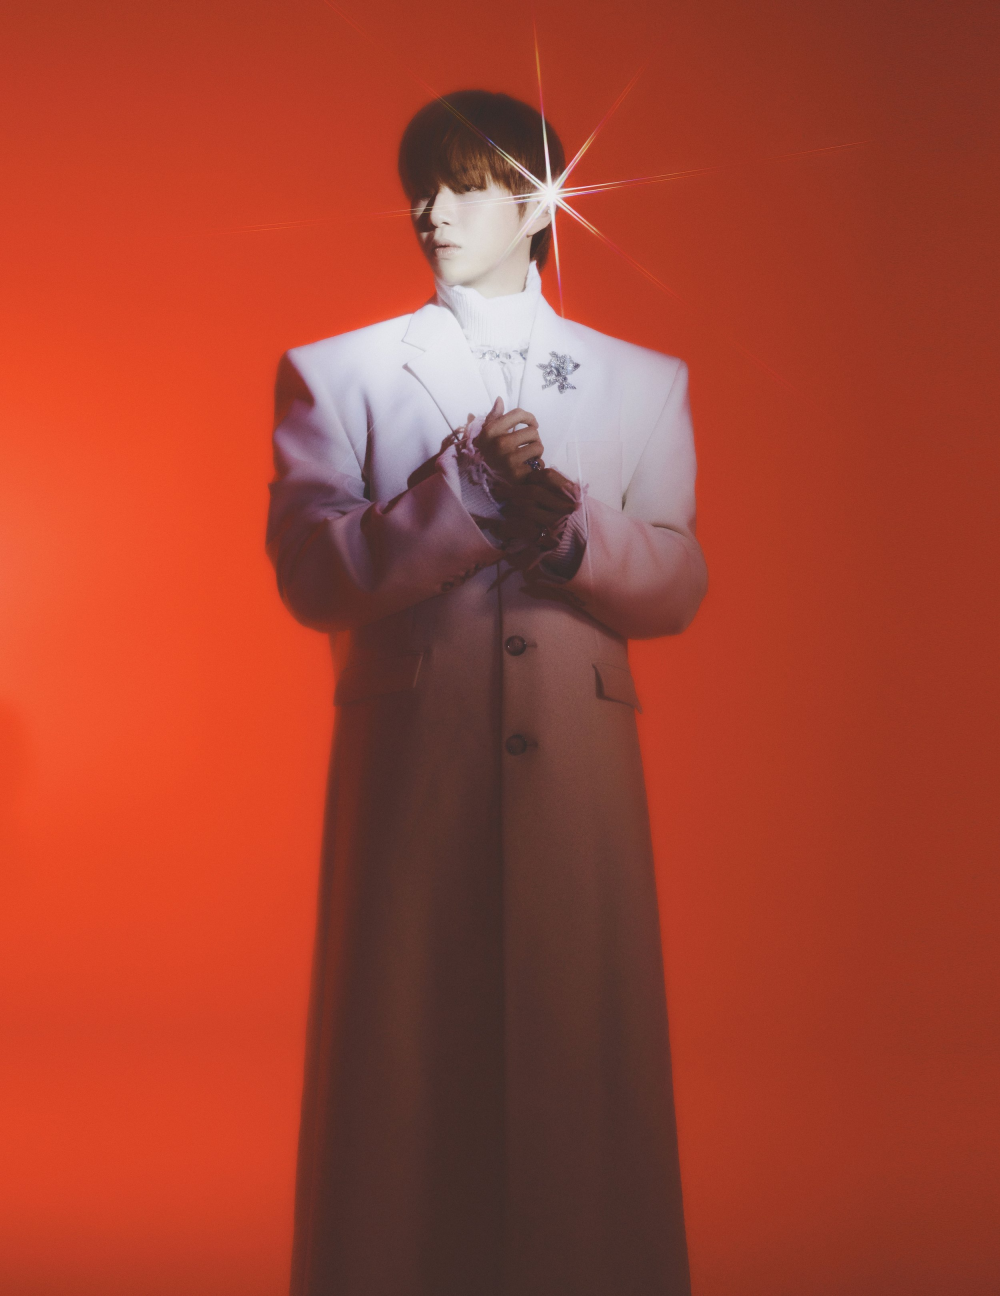 Ангельский образ Кан Даниэля на обложке Flaunt Magazine